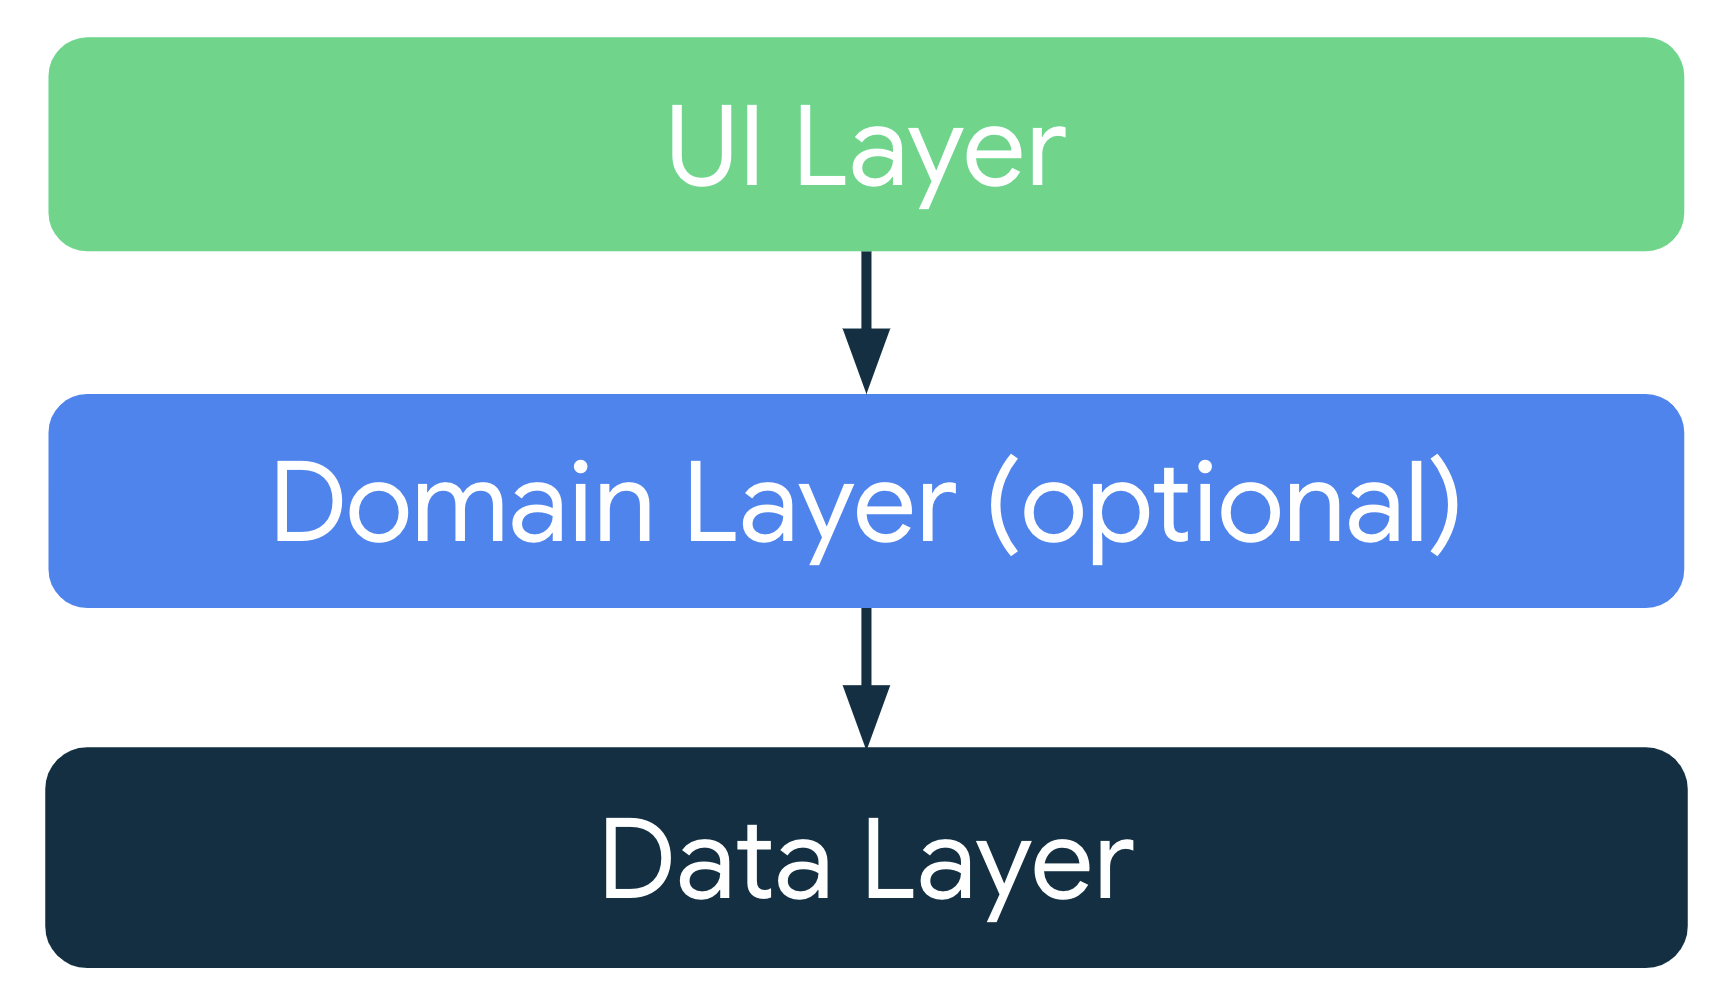 Dalam arsitektur aplikasi standar, lapisan UI mengambil data aplikasi
    dari lapisan data atau dari lapisan domain opsional, yang berada di antara
    lapisan UI dan lapisan data.